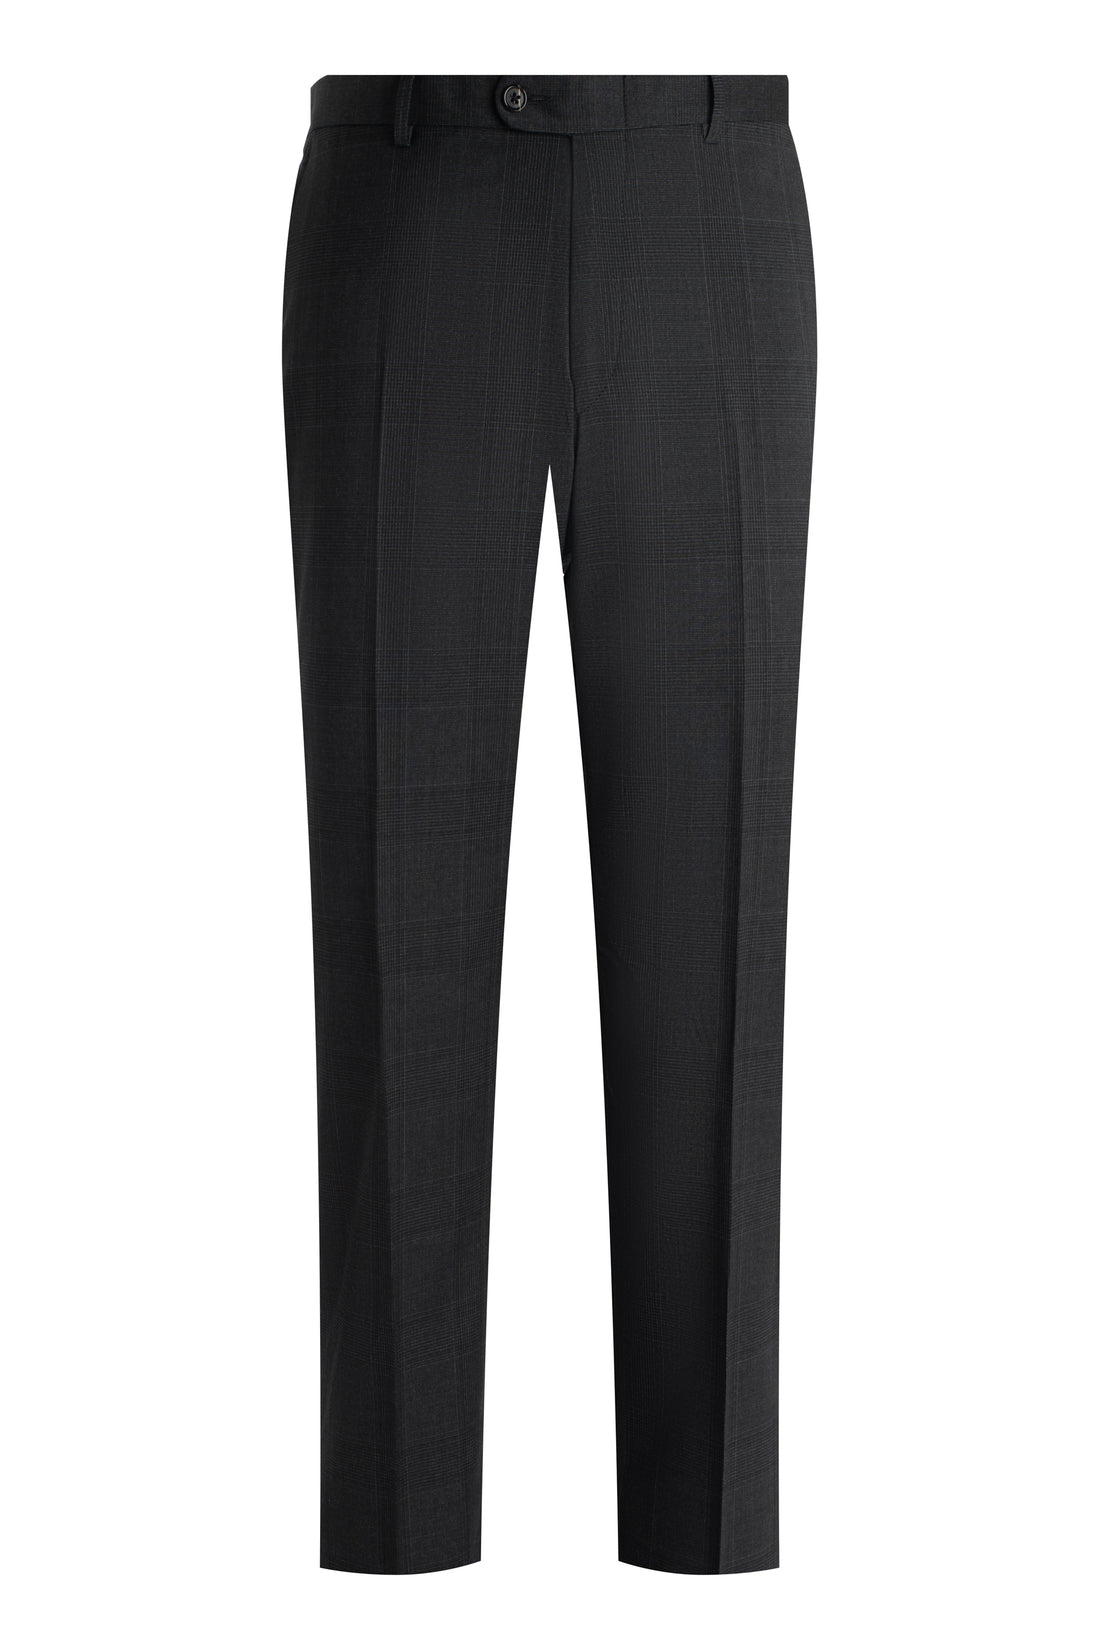 Charcoal Plaid Suit Front Pant